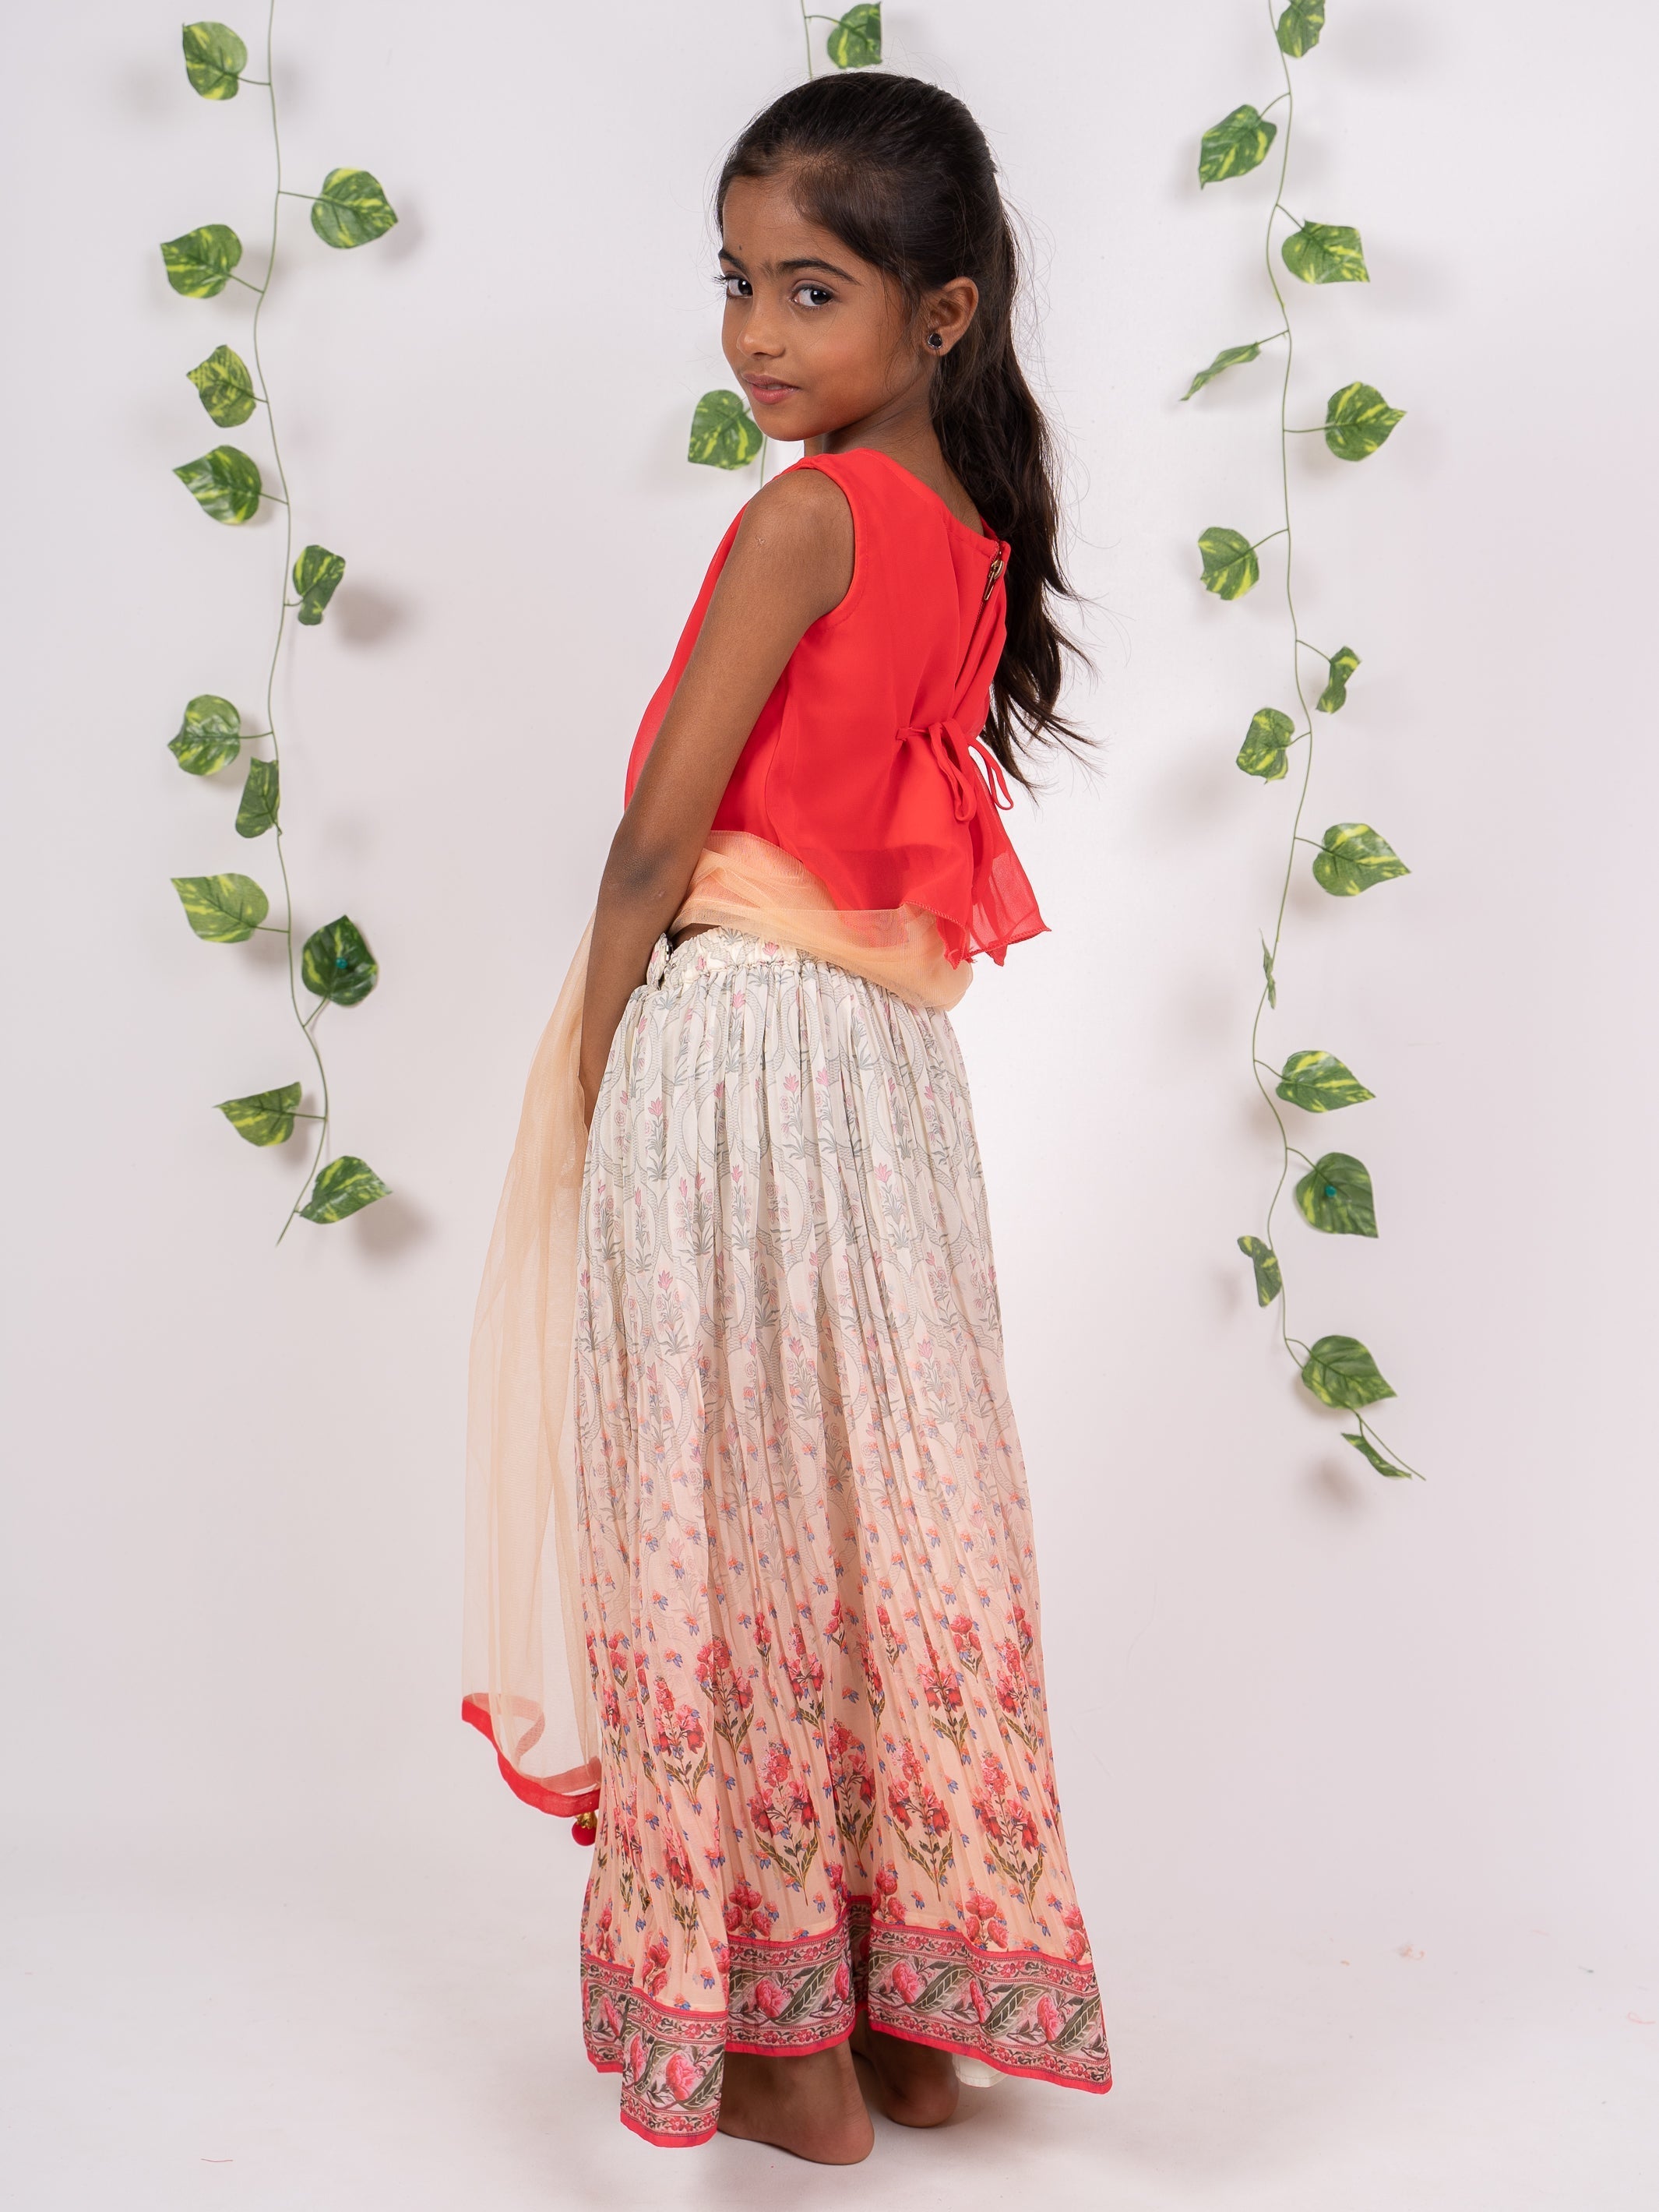 Premium Digital Print Party Wear Skirt crop top lehenga by Rudra